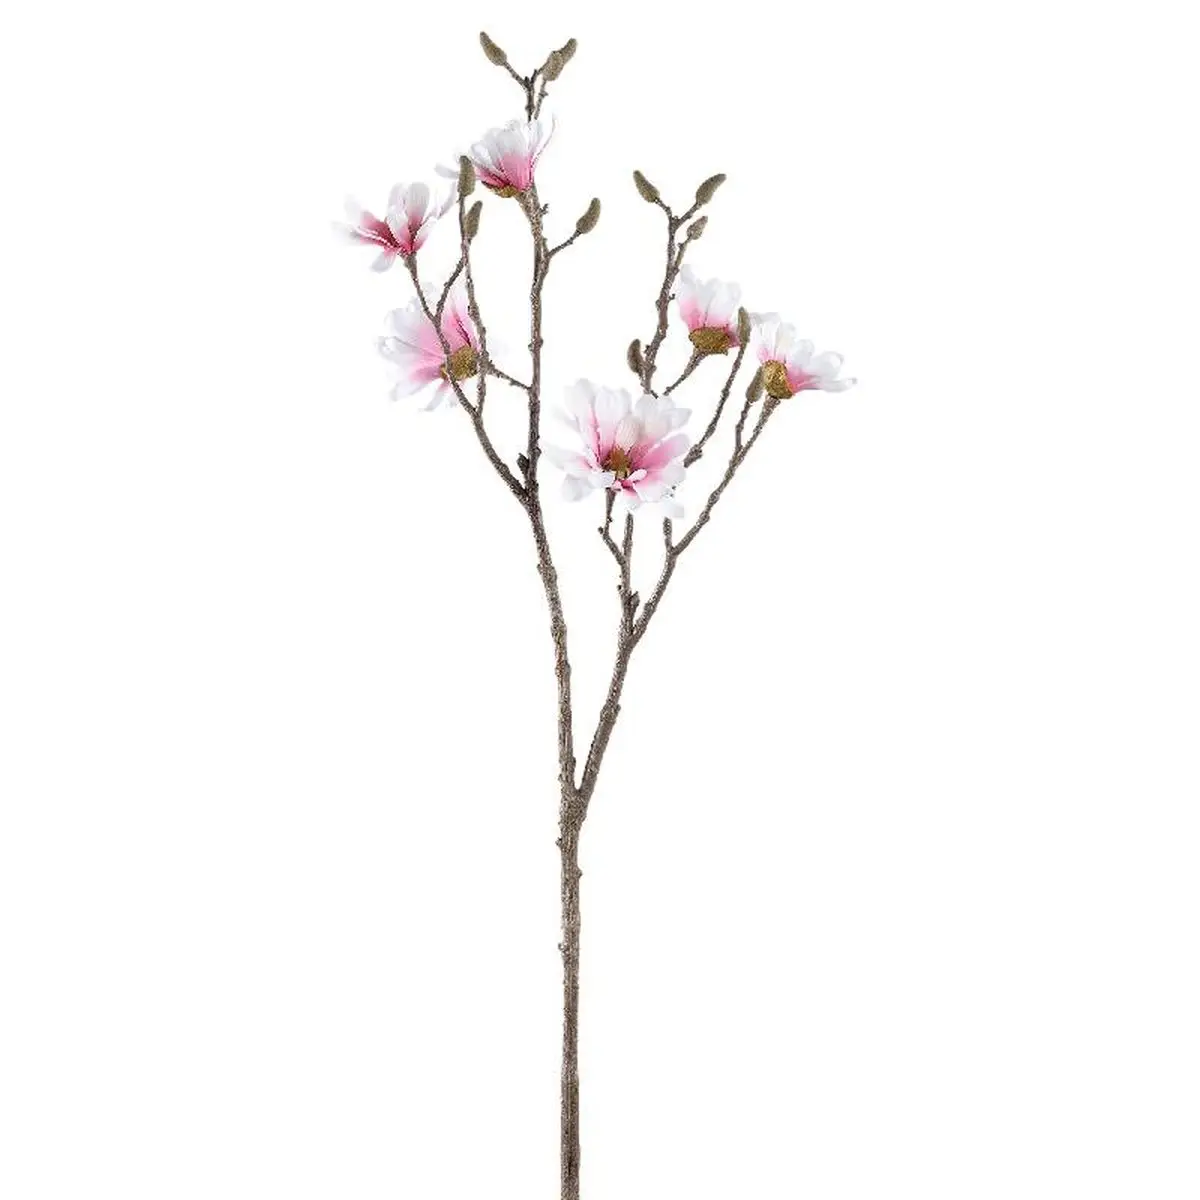 K眉nstliche Blume Magnolia